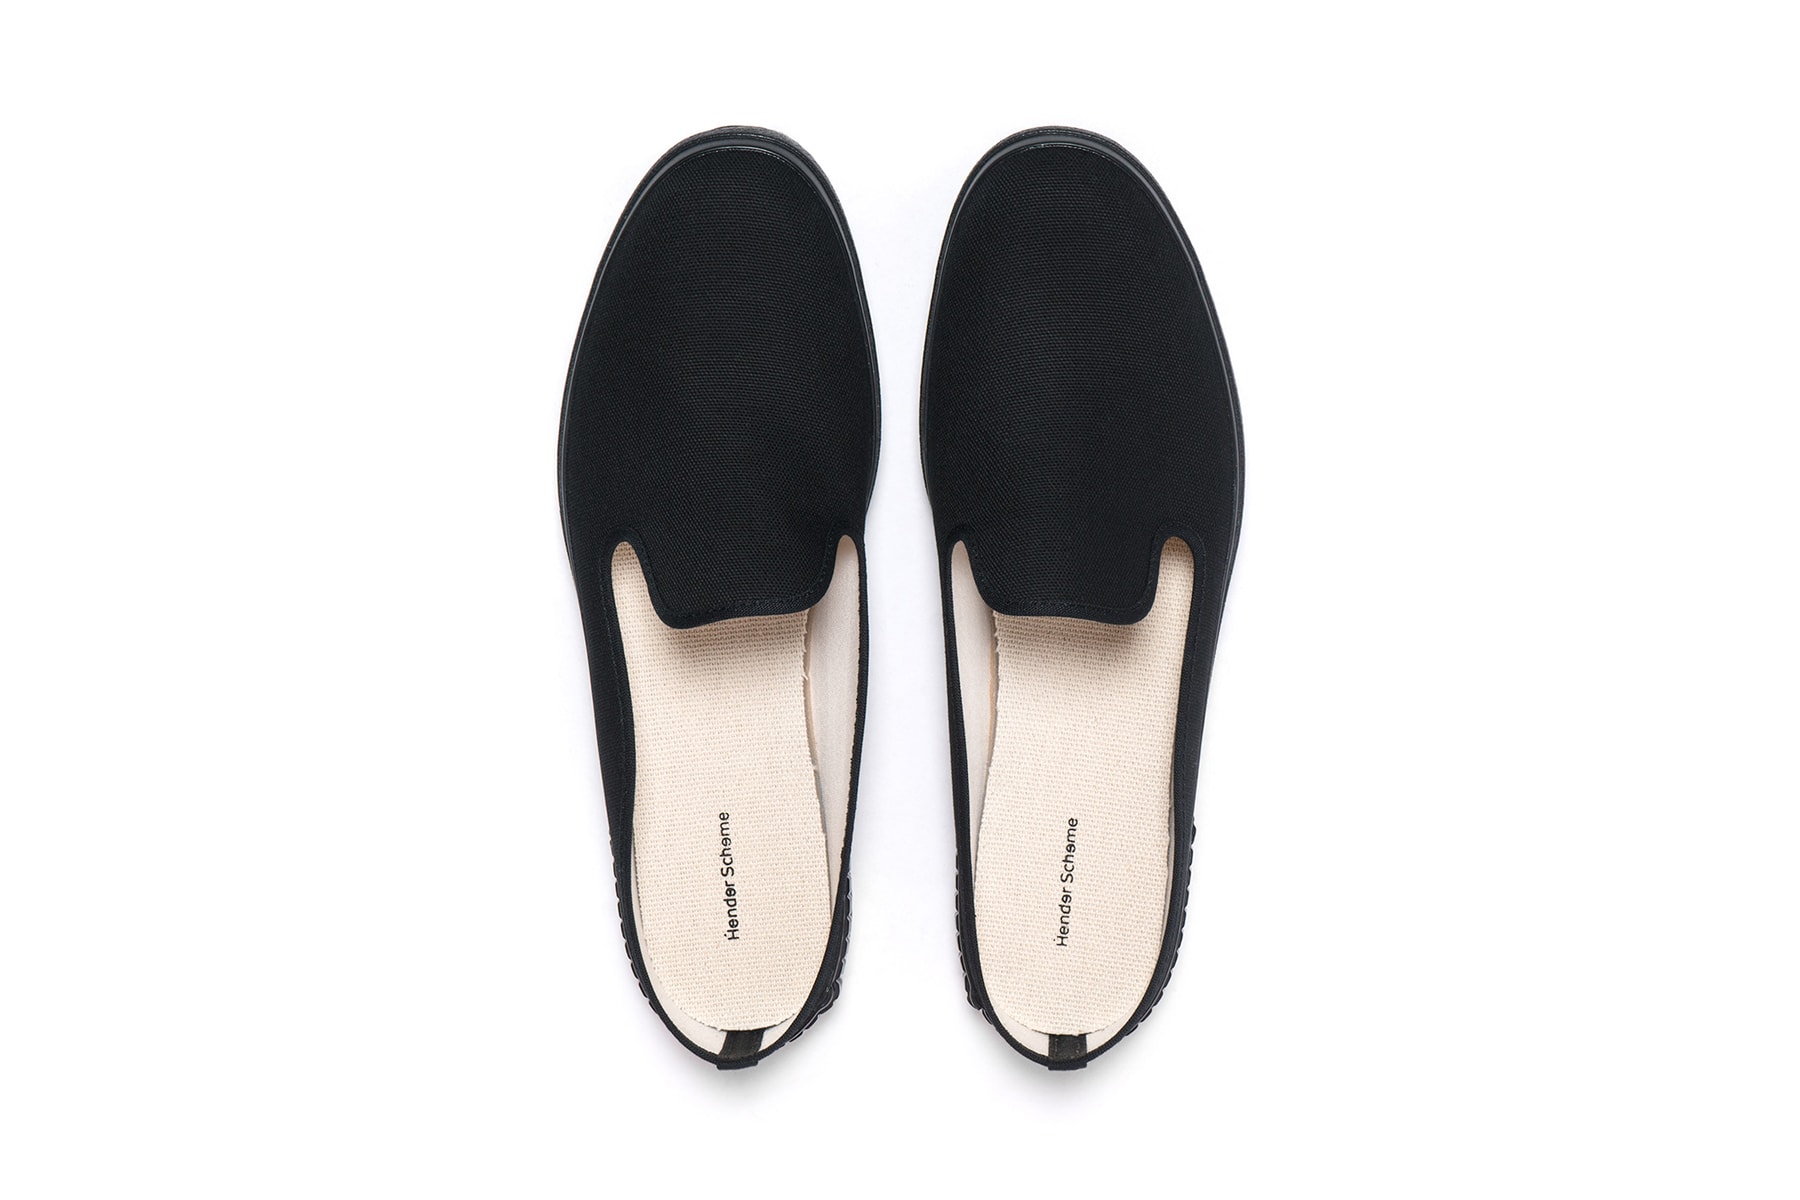 Hender Scheme spring summer 2018 Ryo Kashiwazaki footwear slippers sandals leather accessories